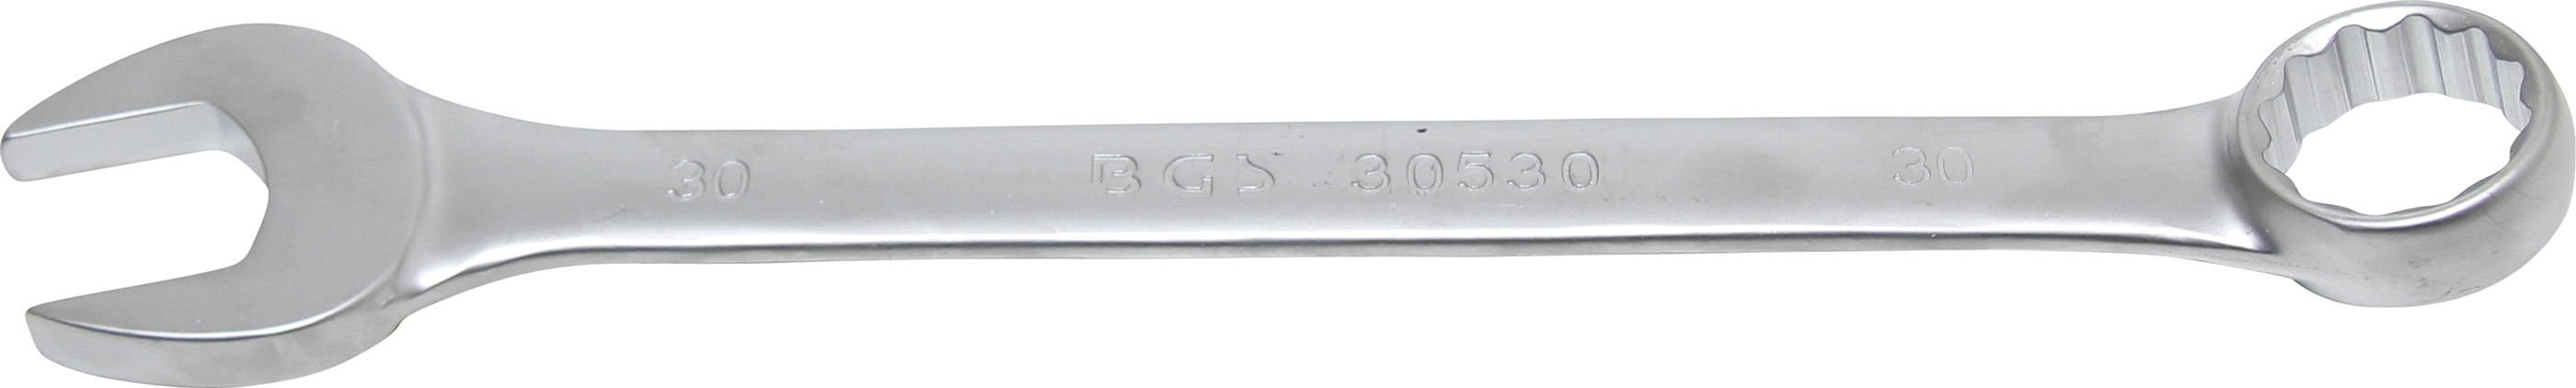 BGS 30530 Cheie combinata, 30 mm